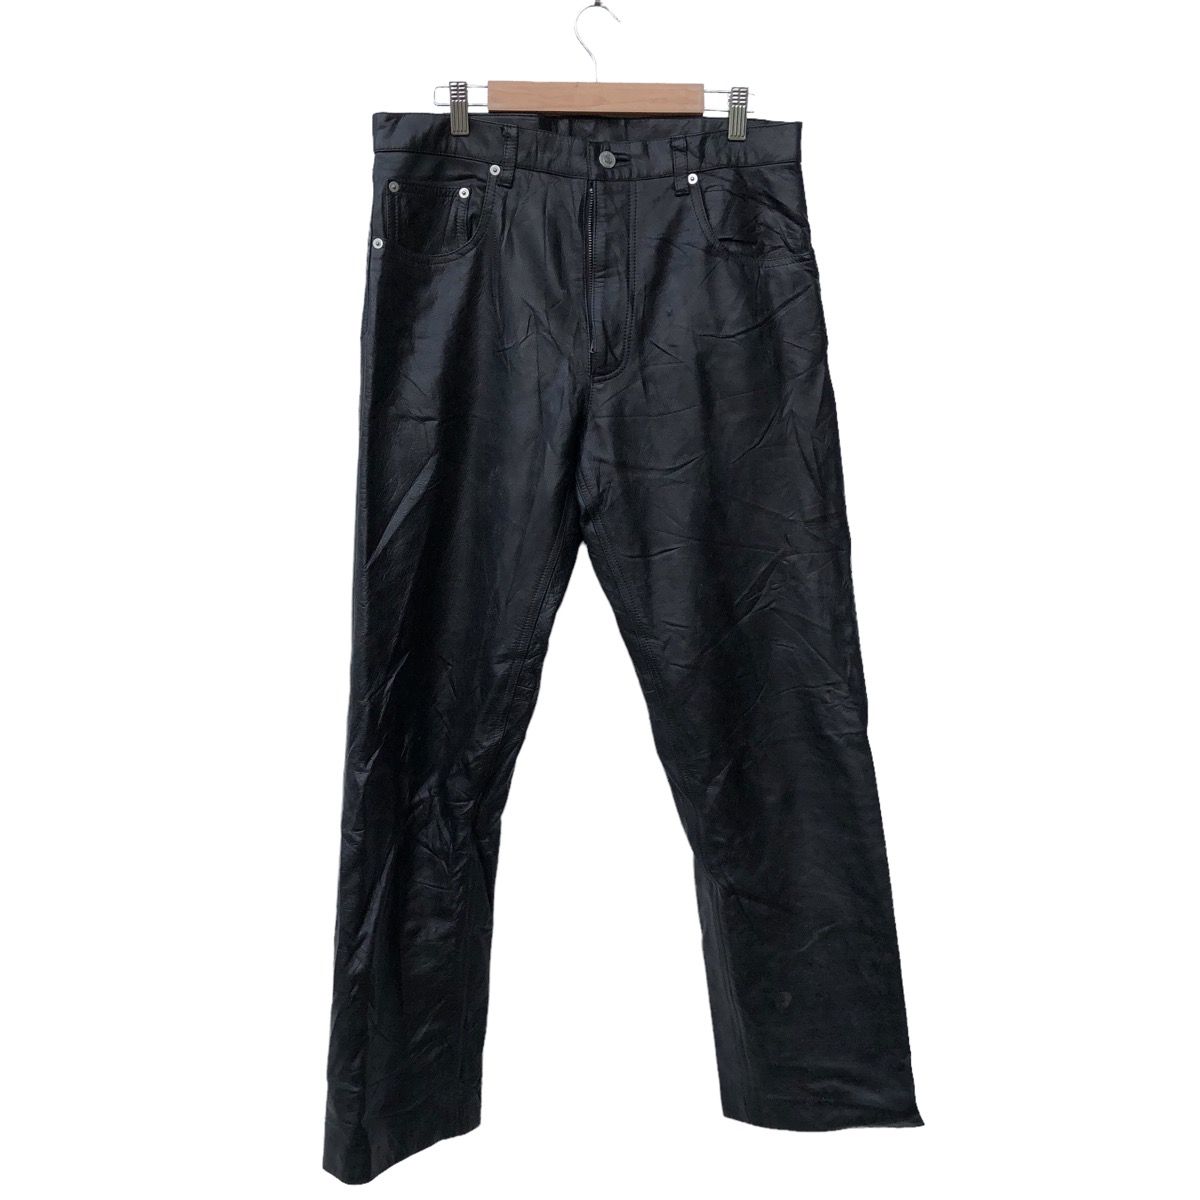 🫴🏻Vintage Wind Armor Leather Pants Jacket - 1